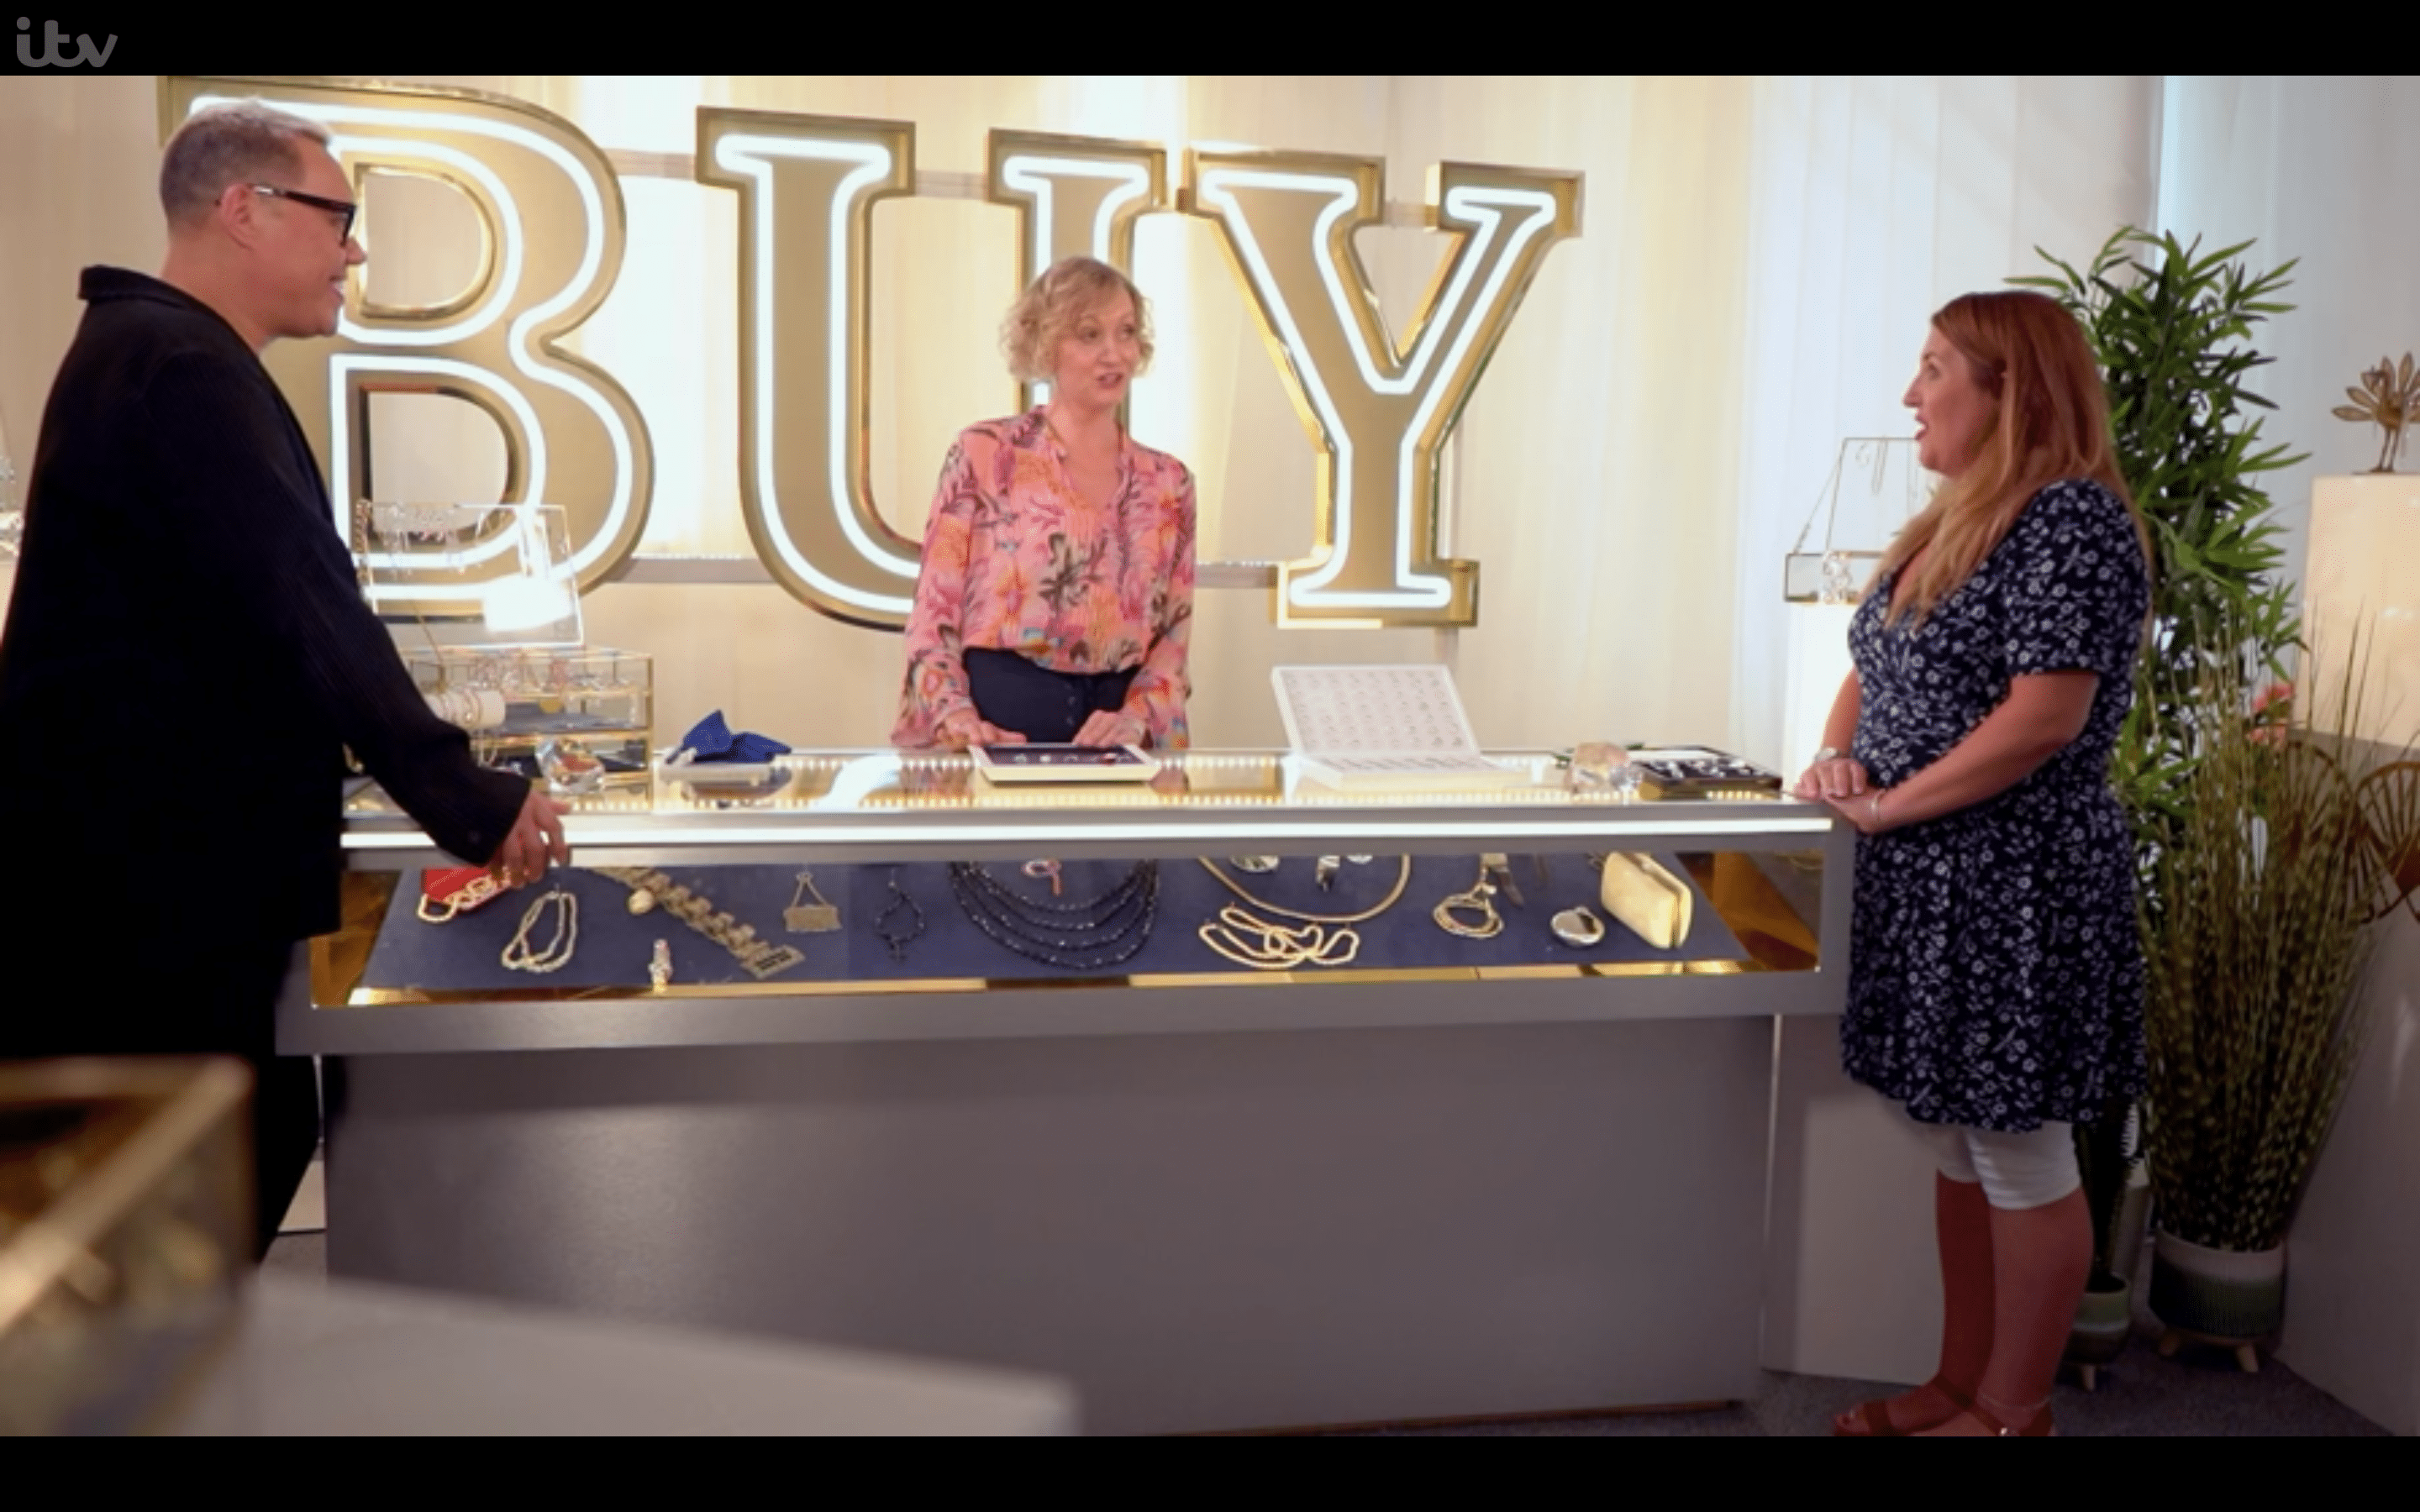 Helen on Bling buy counter